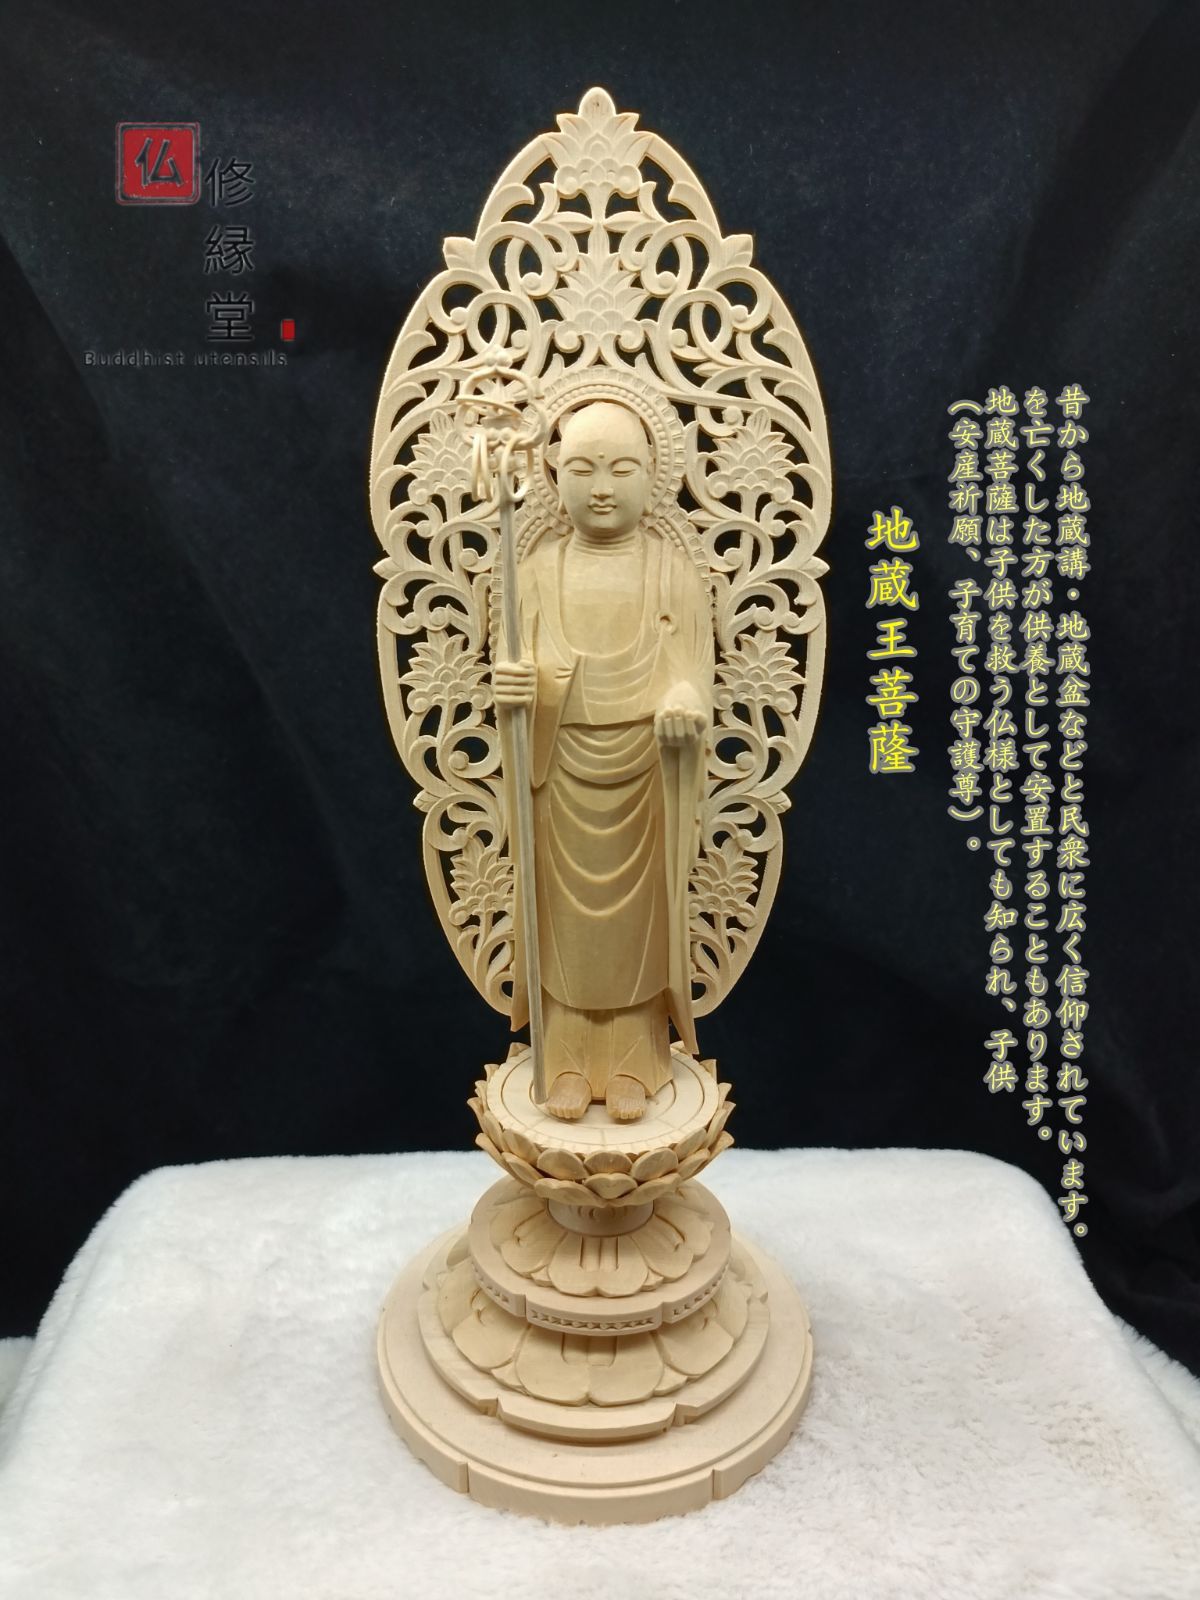 木彫り 仏像 地蔵菩薩 座像 地蔵尊 地蔵 置物 彫刻 一刀彫 天然木檜材